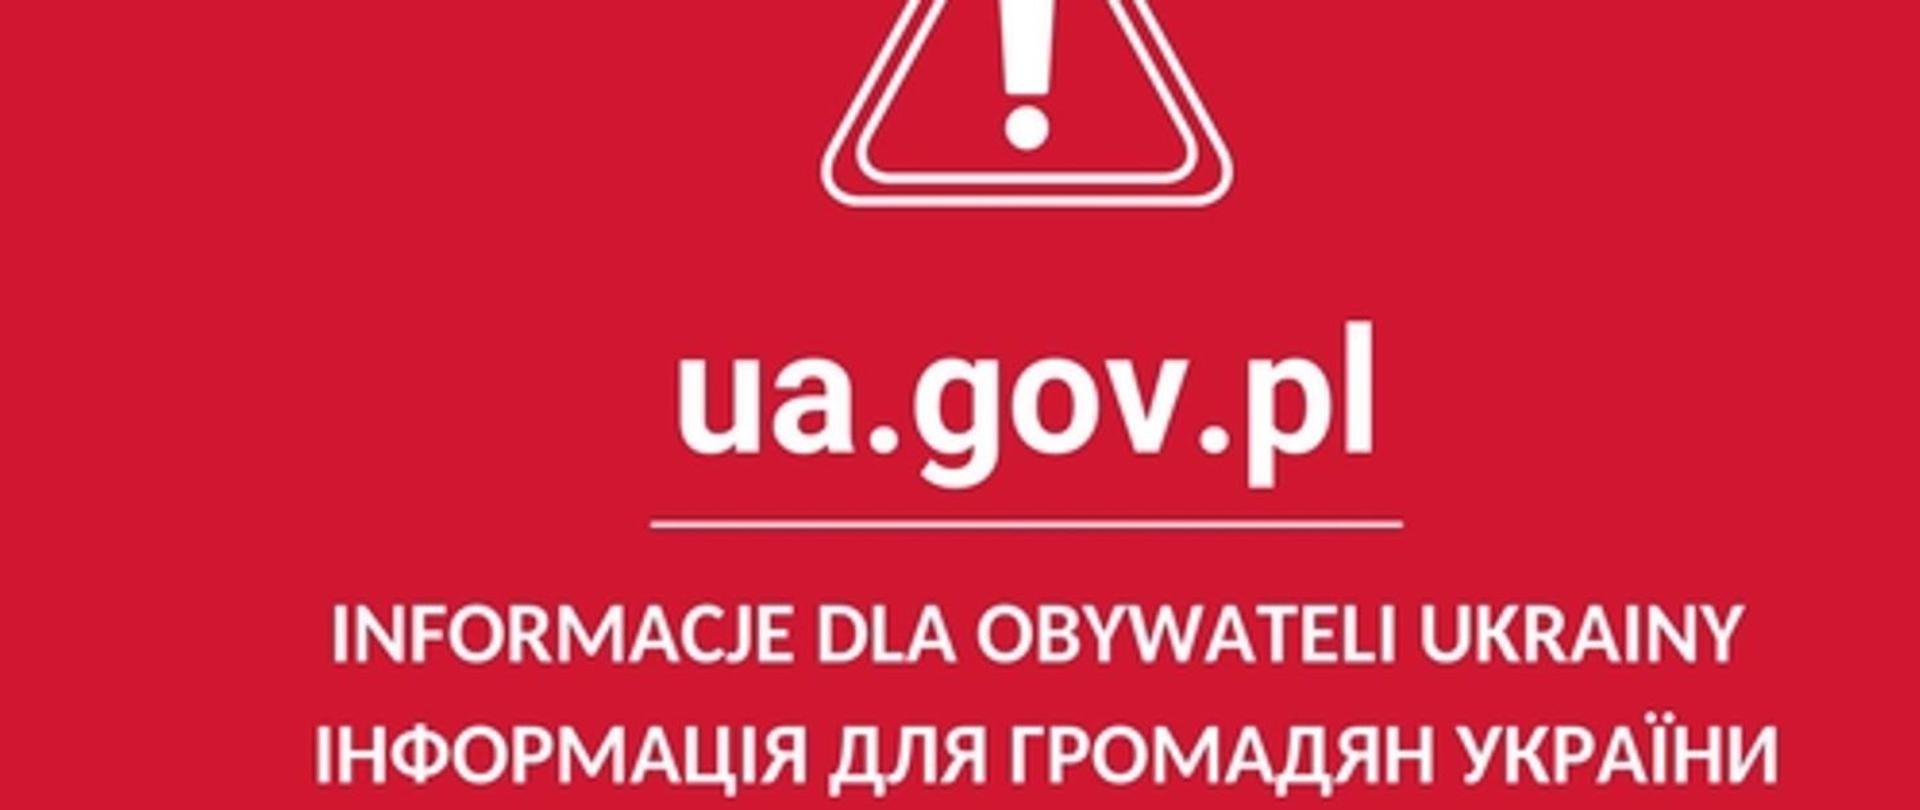 Na górze grafiki widoczny jest trójkąt, w którego środku znajduje się wykrzyknik. Poniżej widnieje napis: ua.gov.pl. Poniżej jego jest napisane: INFORMACJE DLA OBYWATELI UKRAINY. Napis widnieje również w języku ukraińskim. Napisy wraz ze znakiem są białe. Tło jest czerwone.